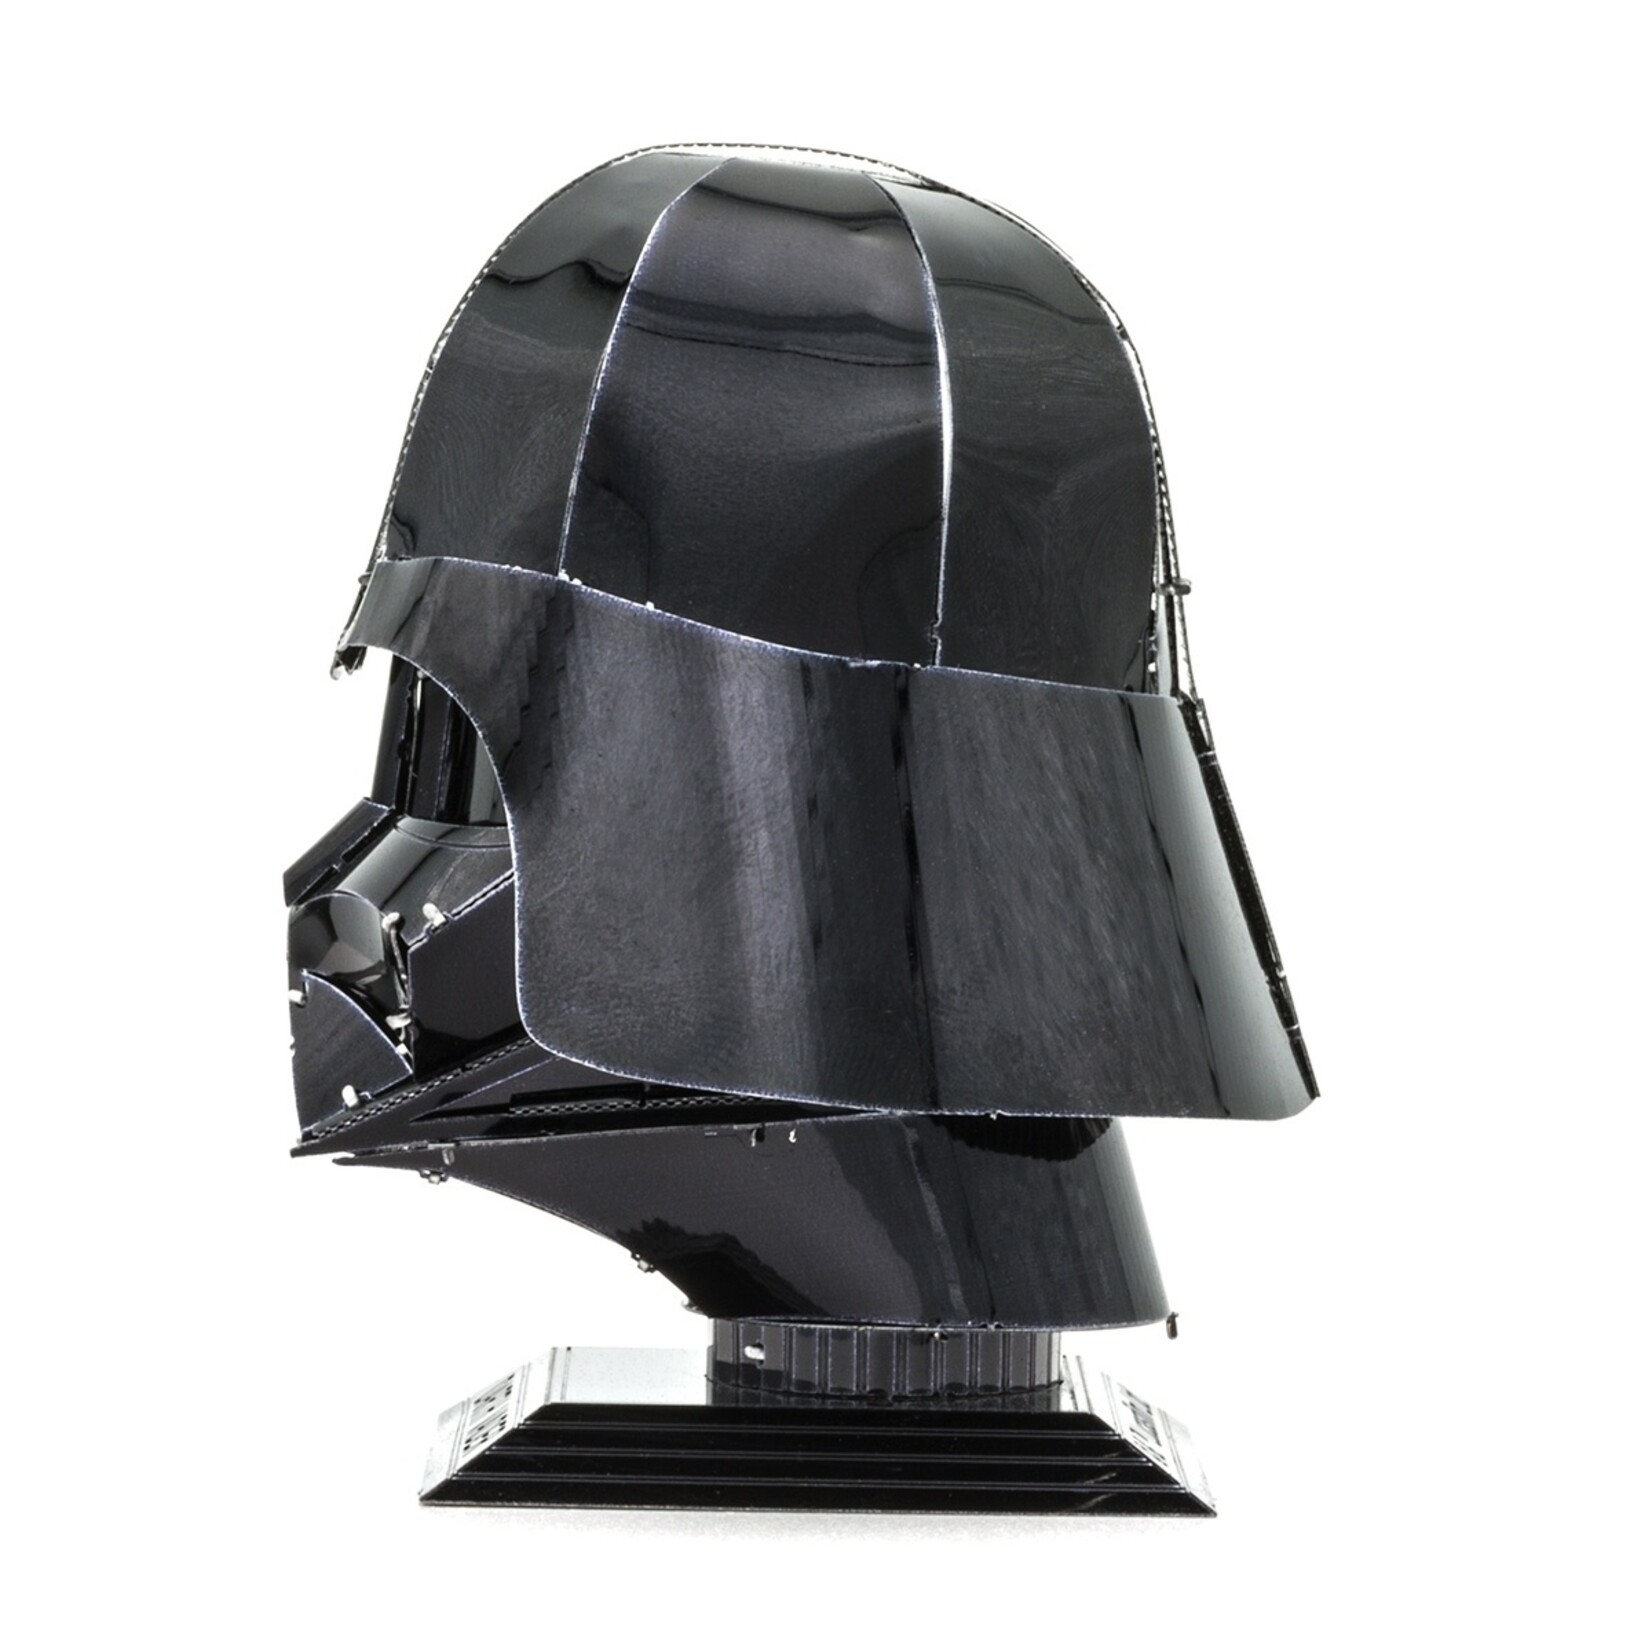 Metal Earth Metal Earth - Star Wars : Darth Vader Helmet